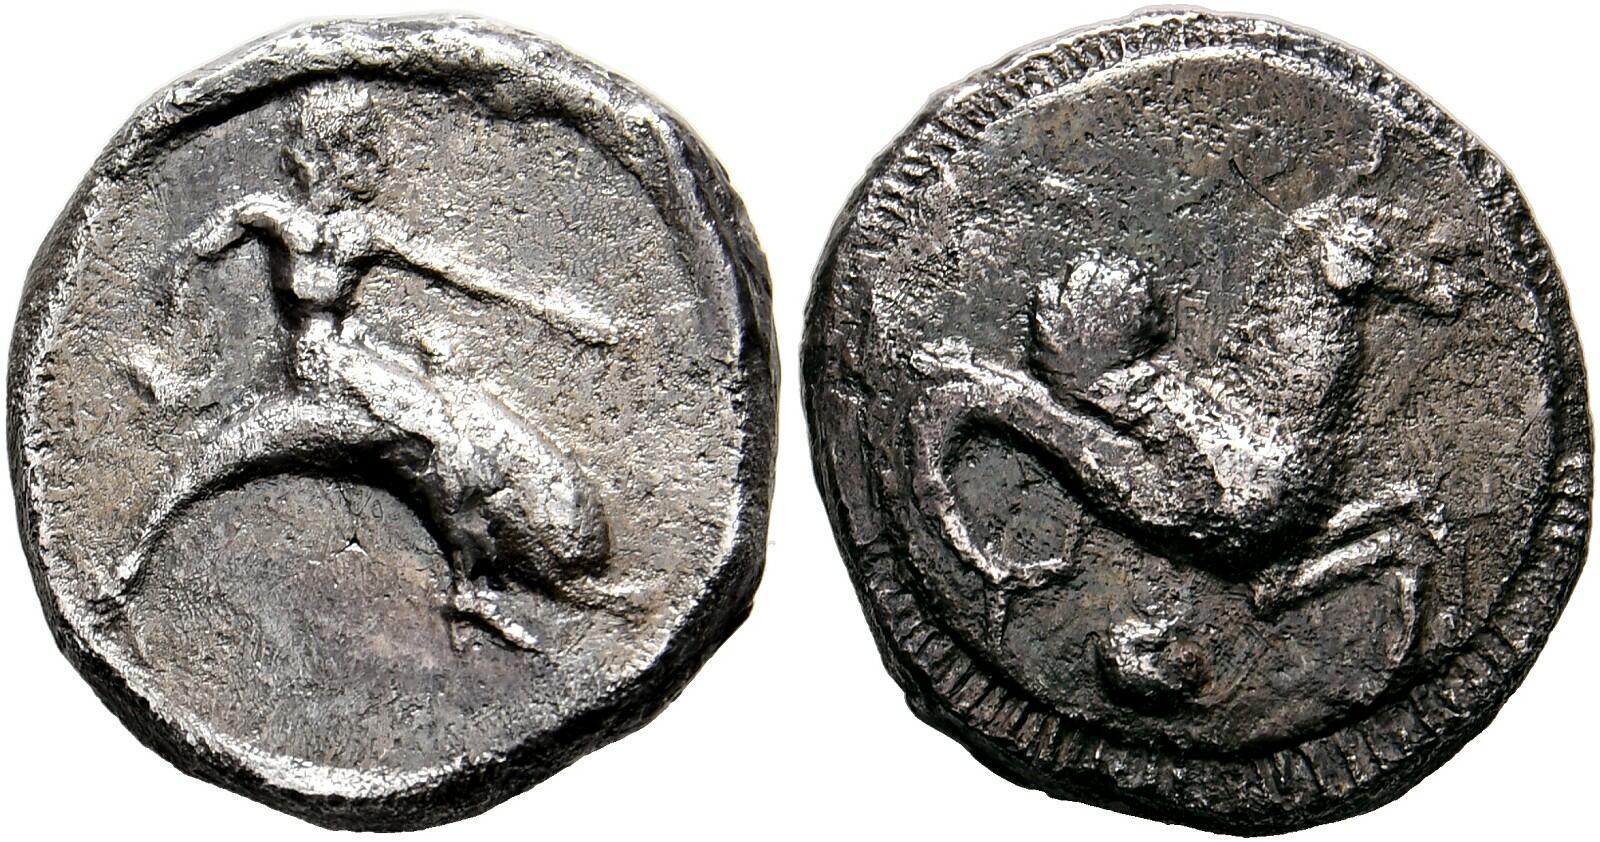 10.20.90.10: Ancient Coins - Greek Coins - Calabria - Tarentum